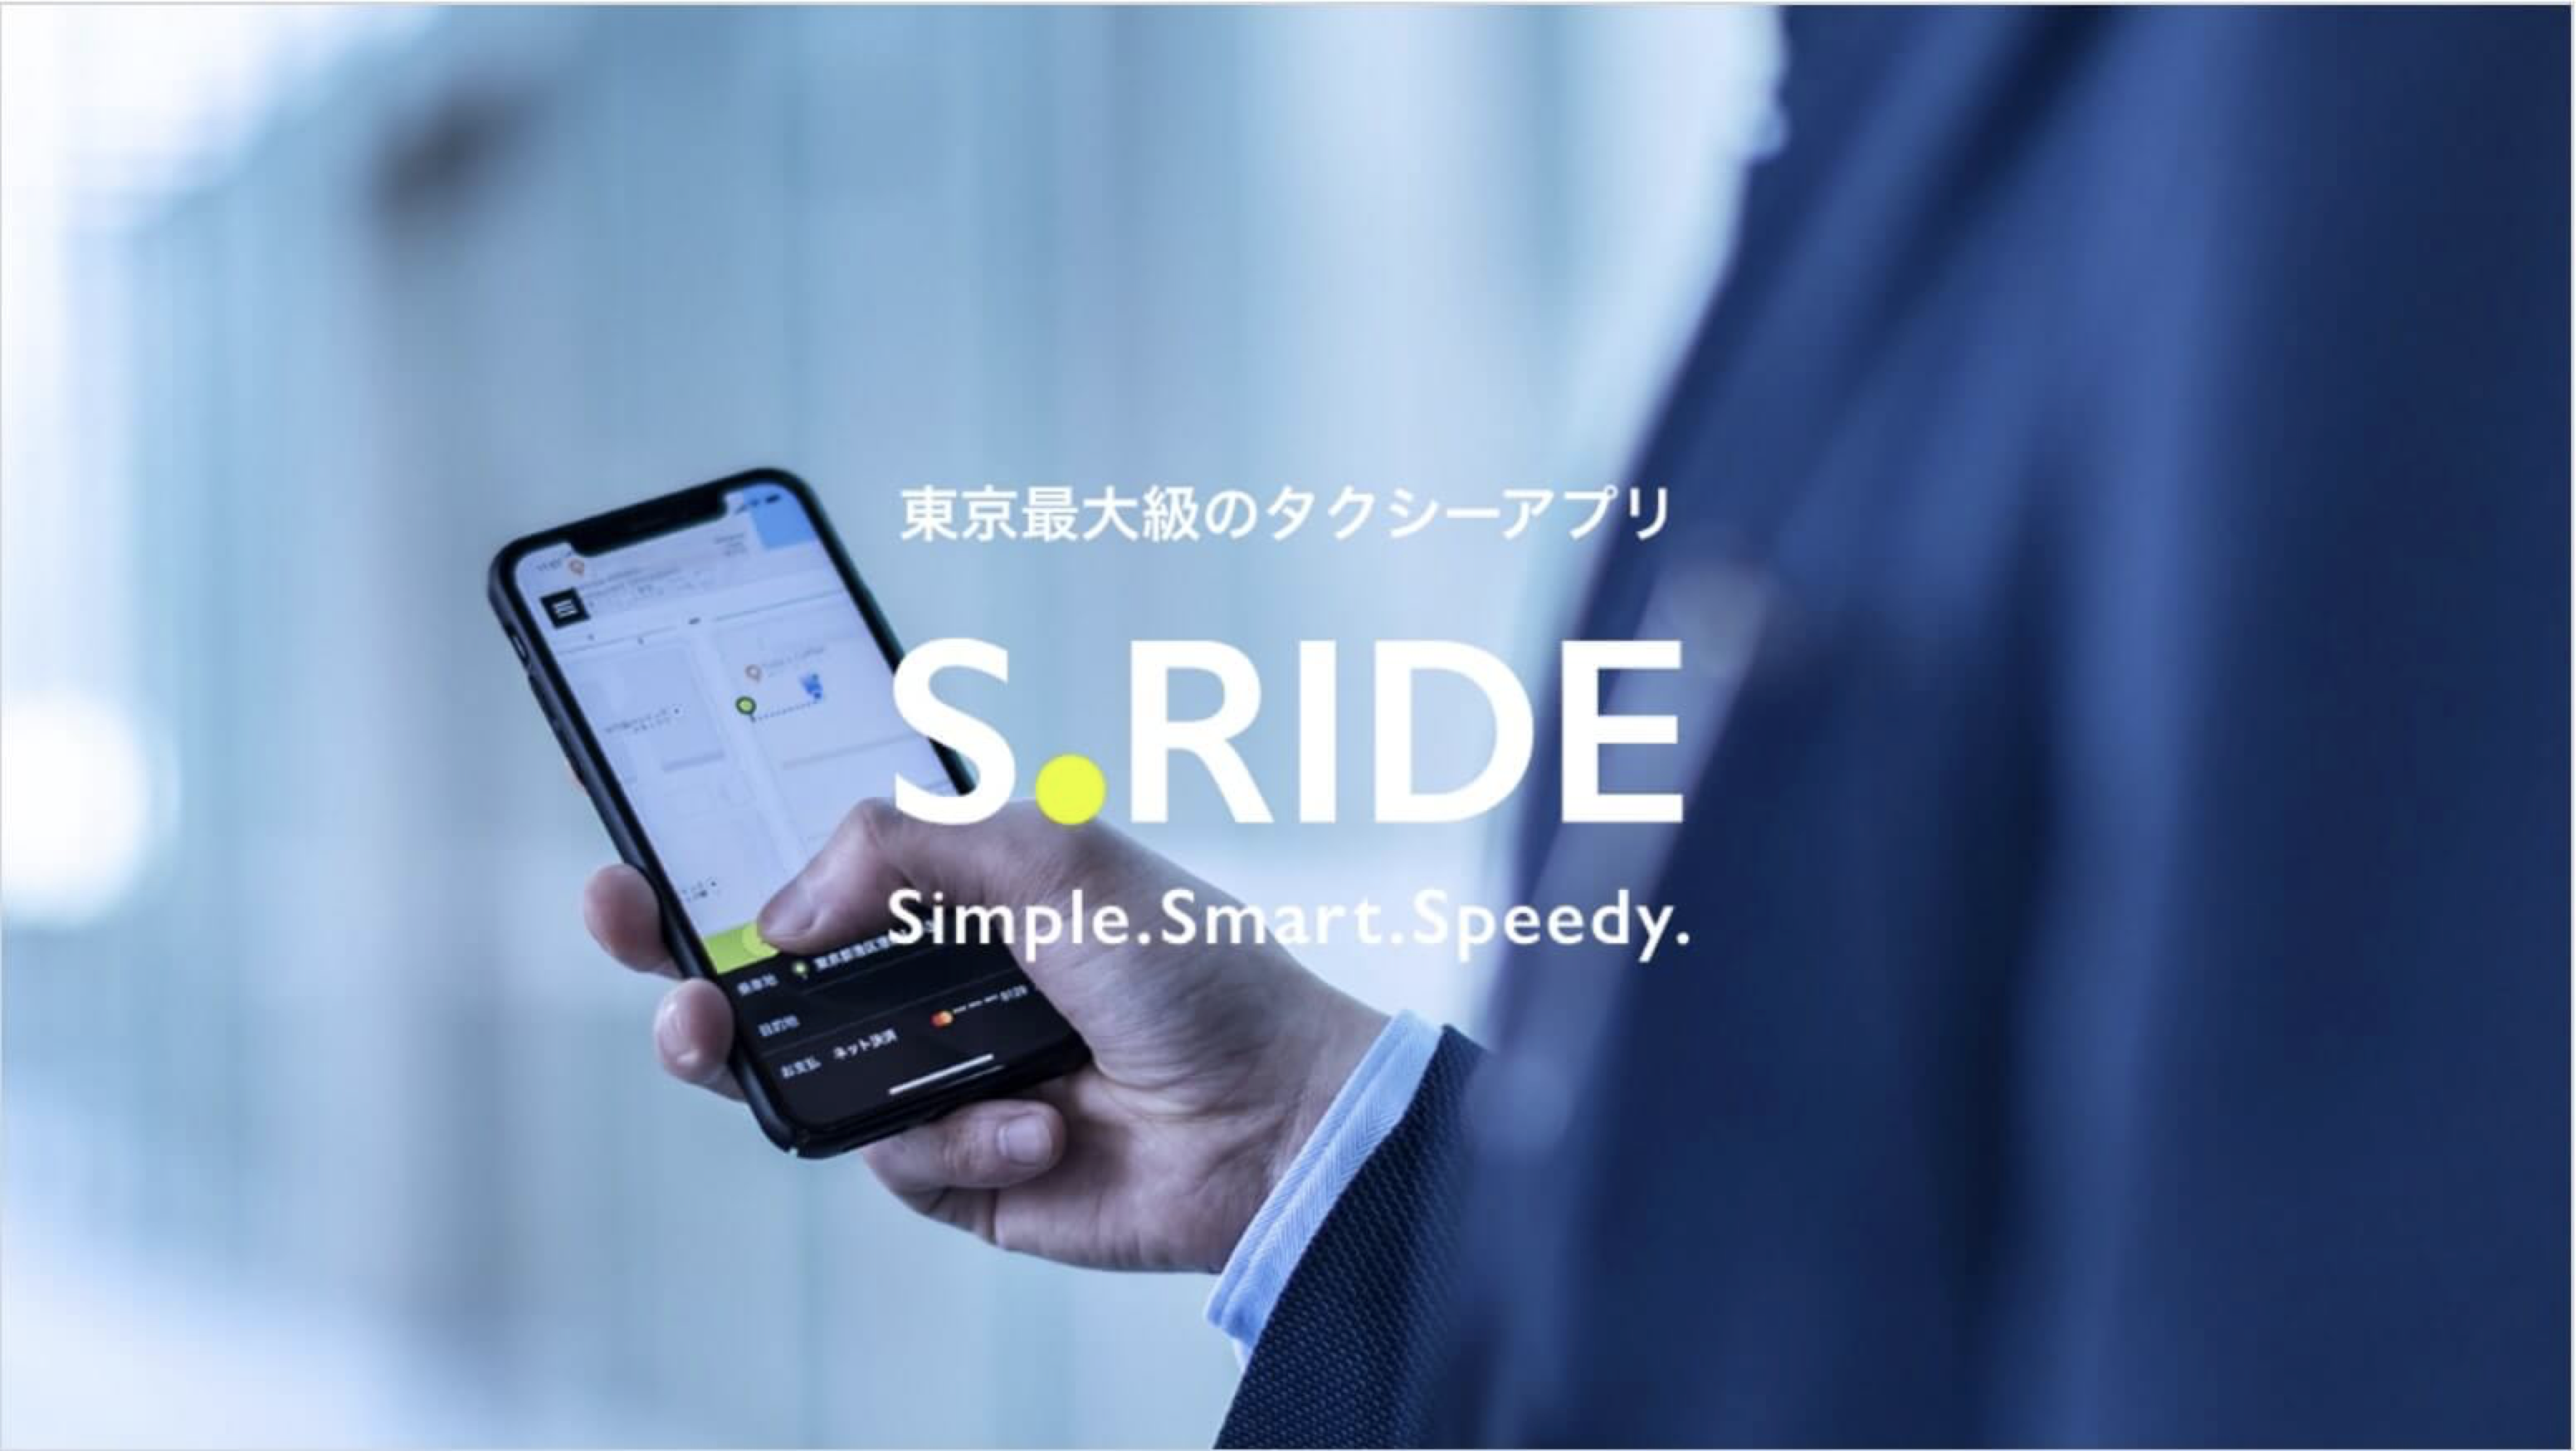 横浜で使えるタクシーアプリとクーポン情報